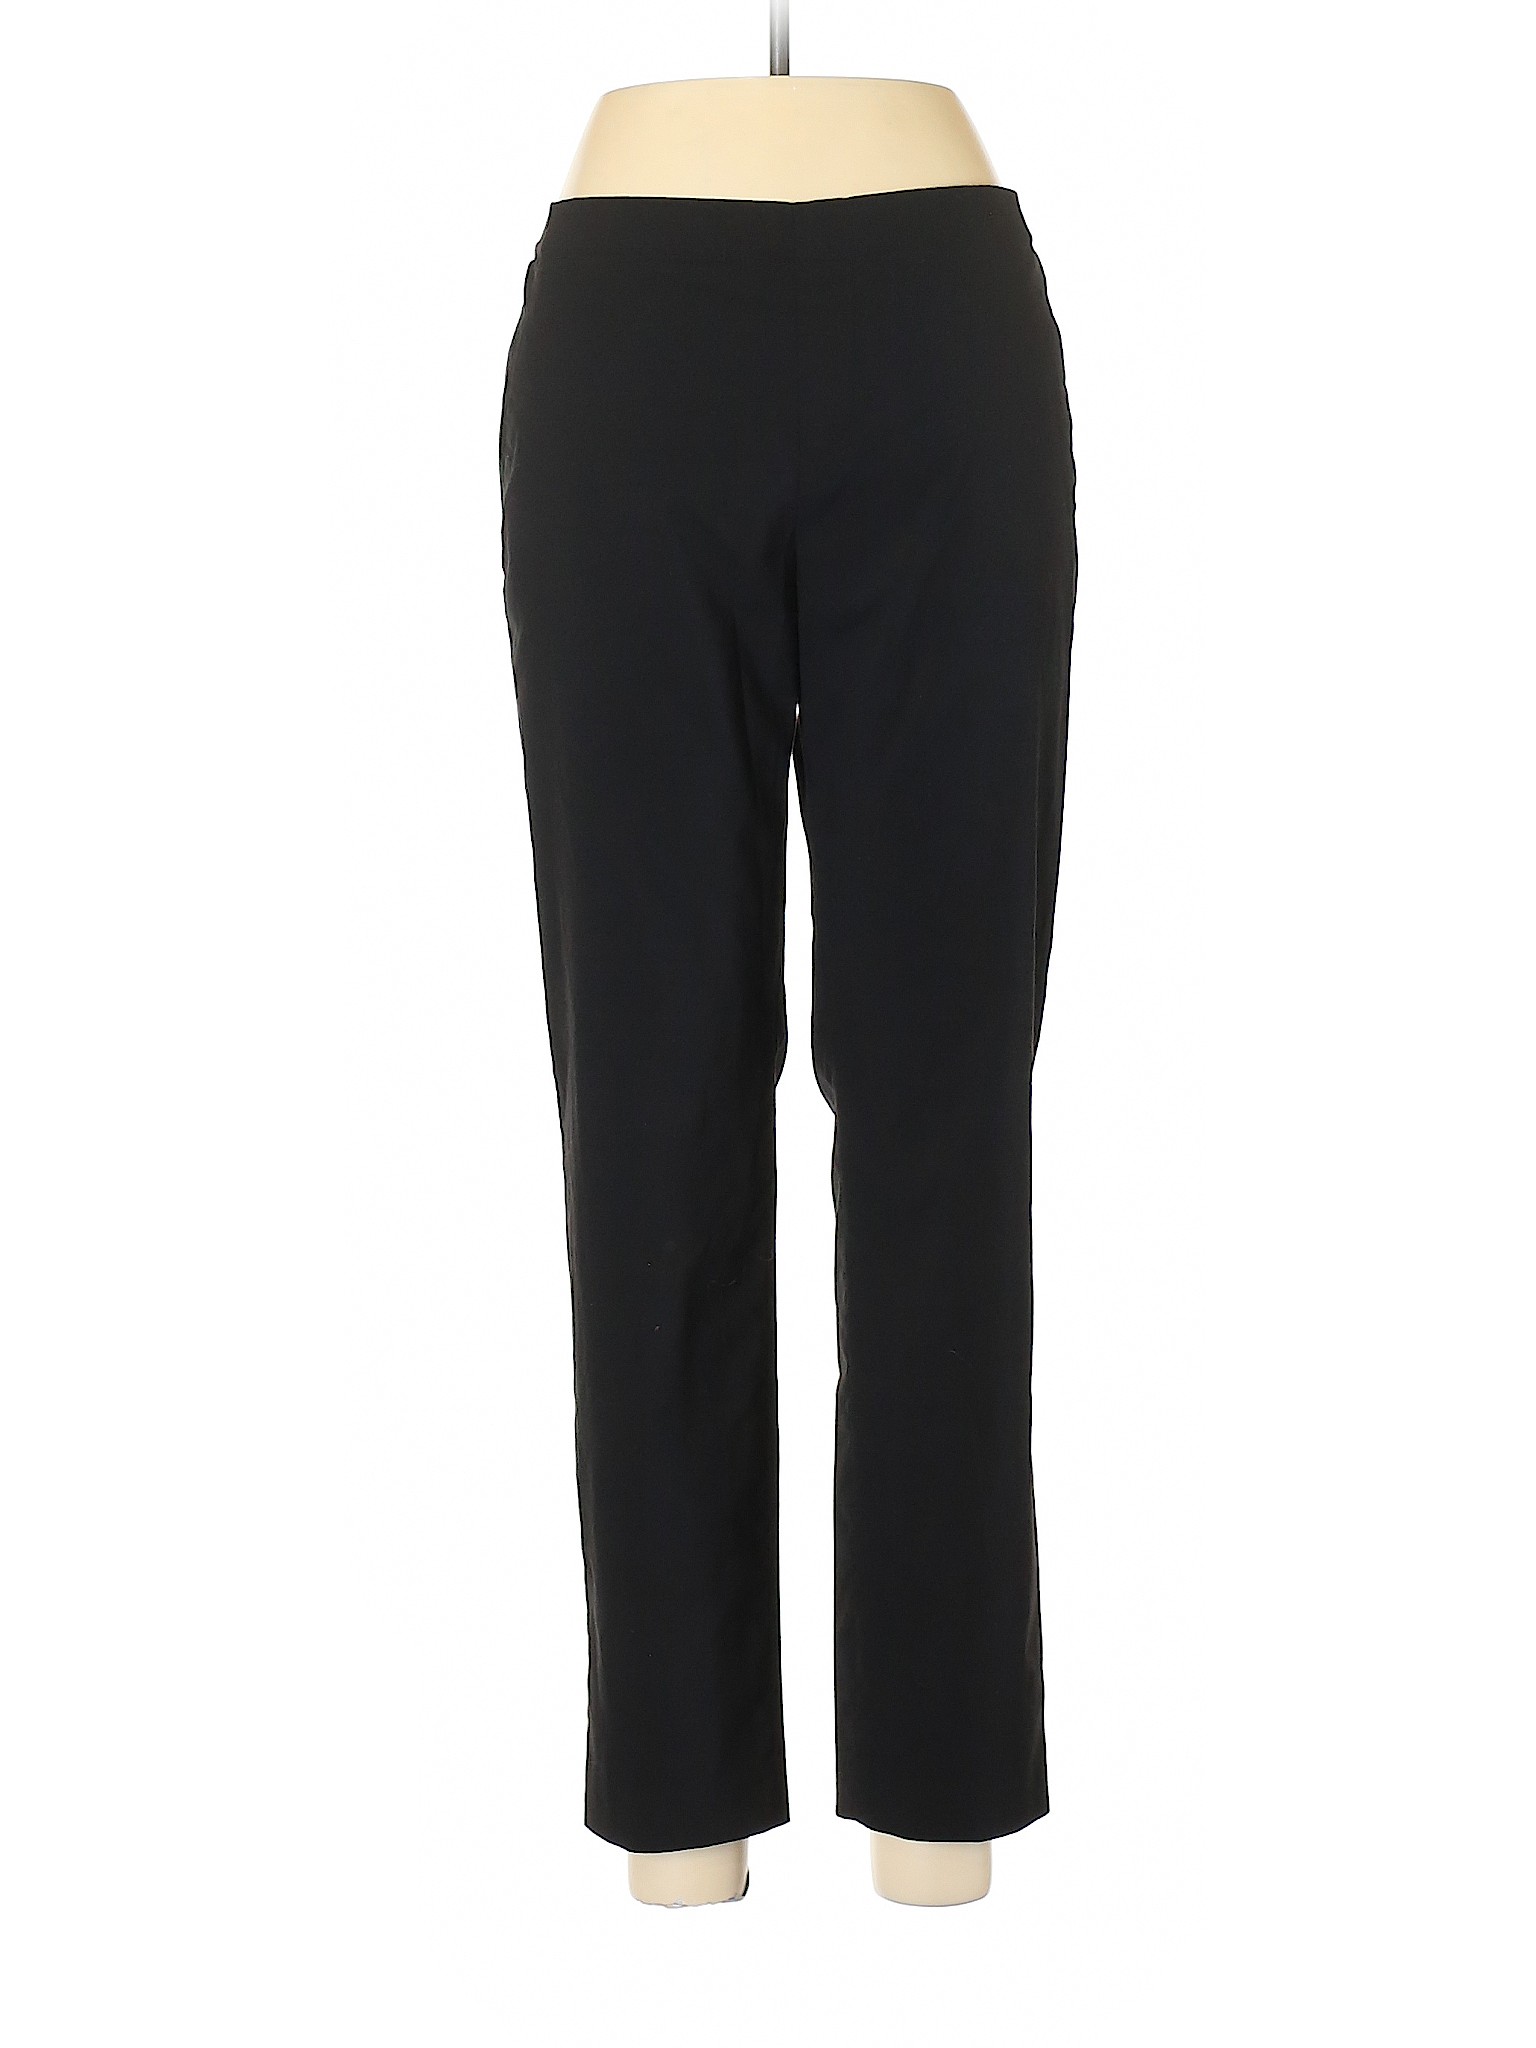 Uniqlo Women Black Dress Pants 28W | eBay